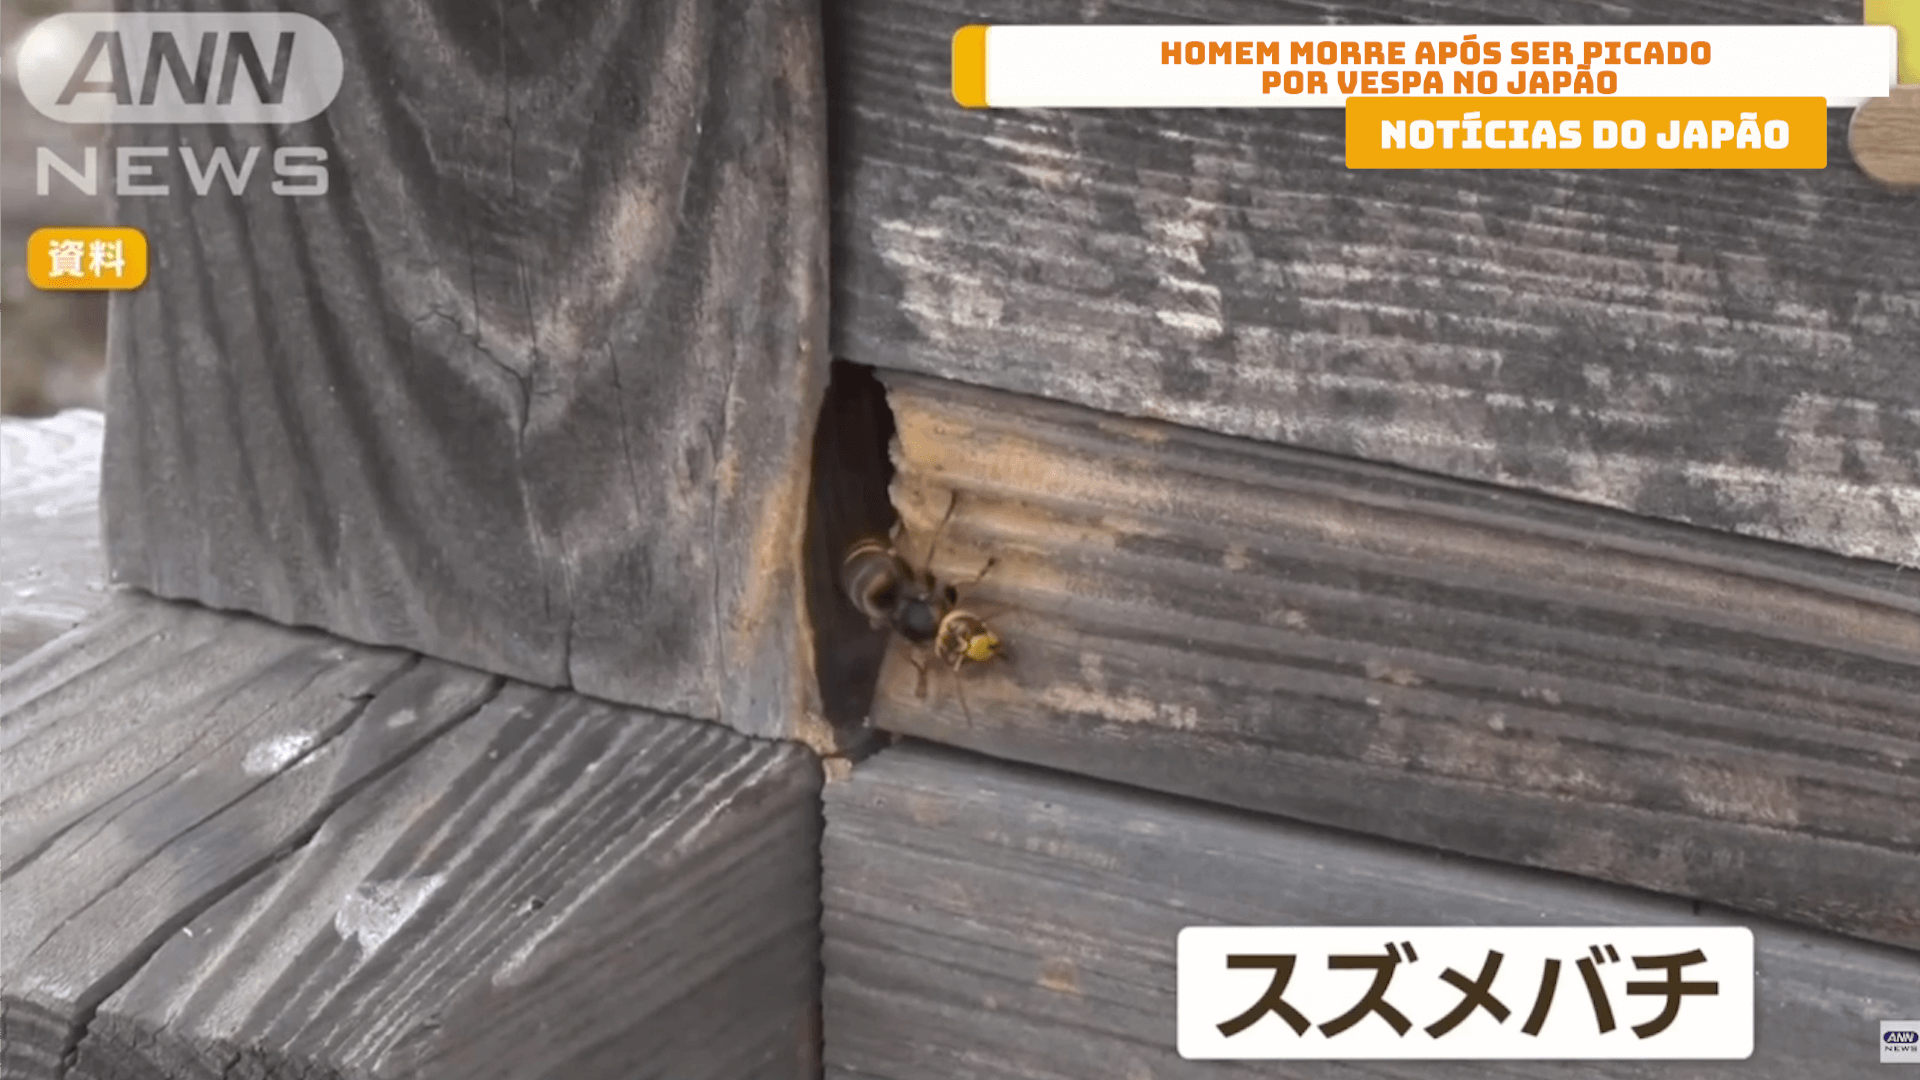 Homem morre após ser picado por vespa no Japão 